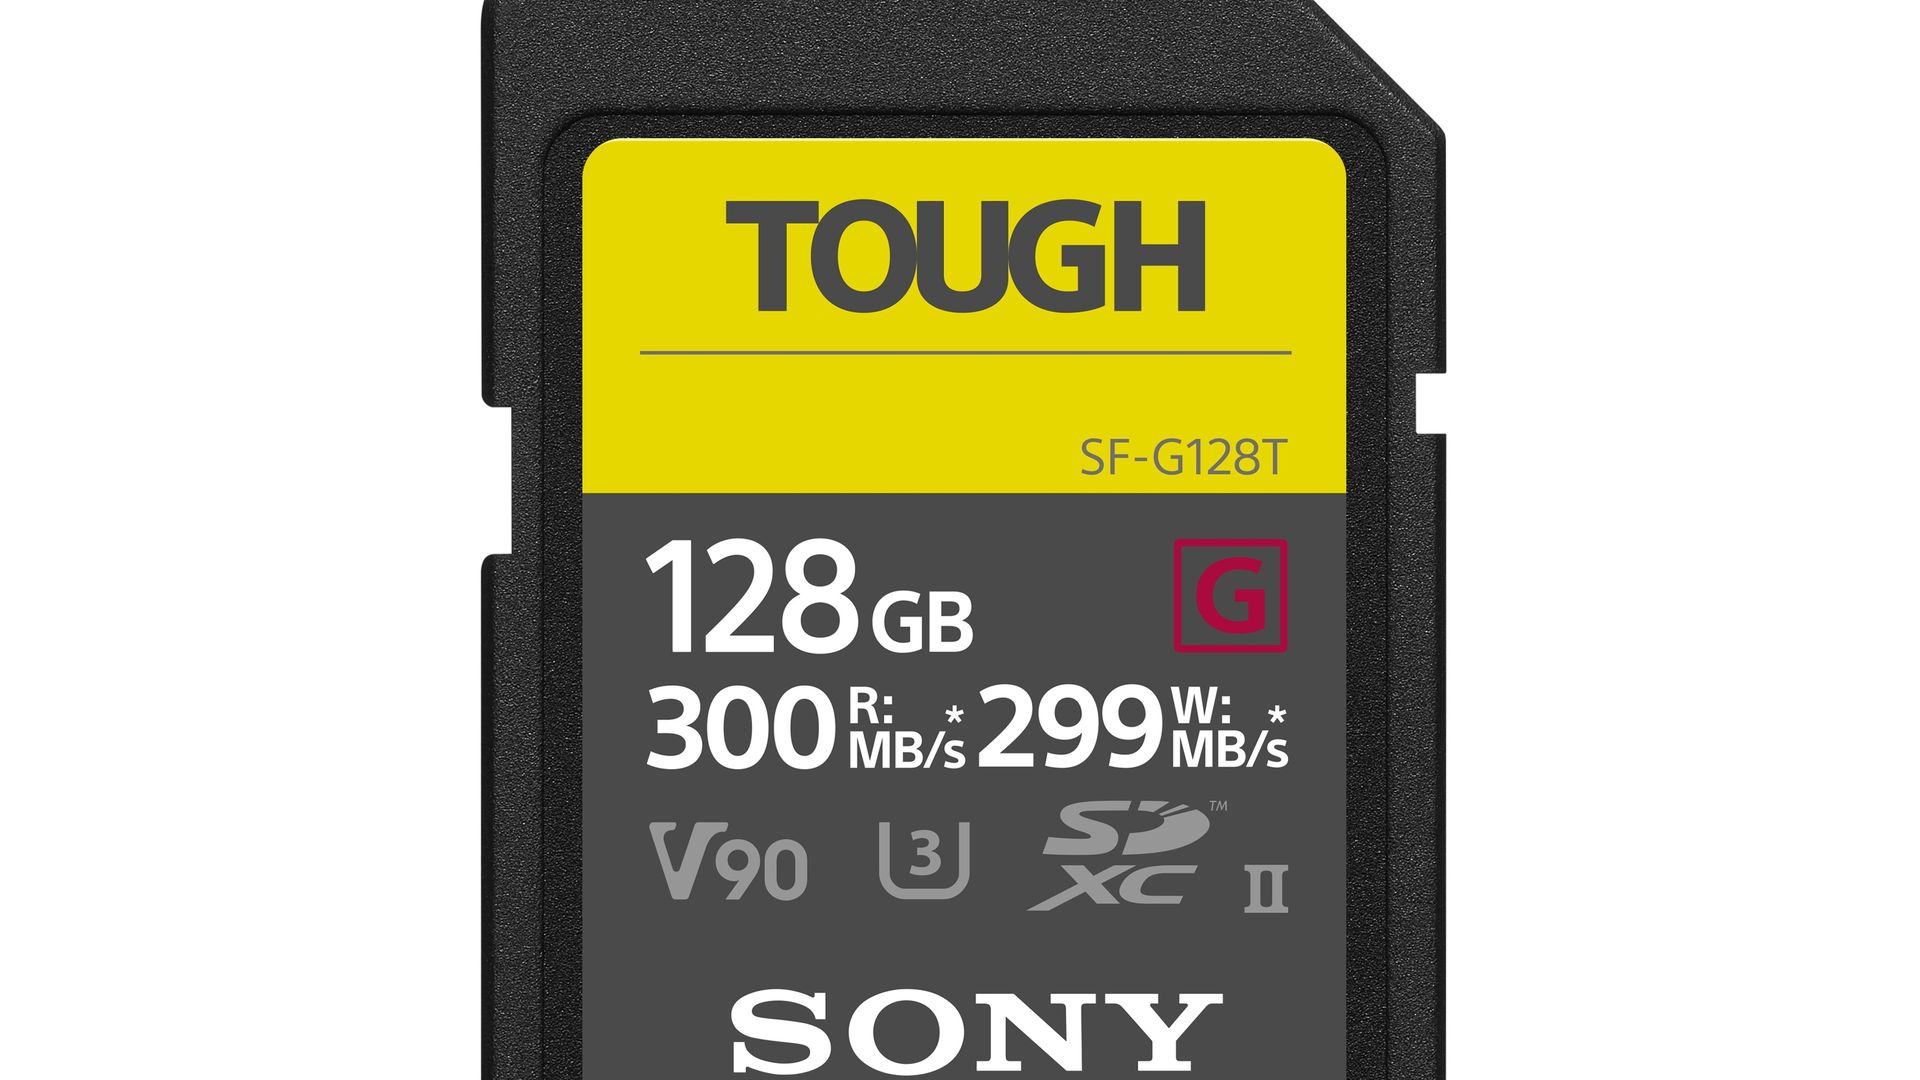 Купить карту памяти на 64 гб. Карта памяти Sony tough SDXC 128gb 277r/150w (SF-m128t/t). Карта памяти Sony CEB-g256 CFEXPRESS 256gb Type b. Sony SDXC 64gb. Карта памяти Sony SDHC 64gb UHS-II u3 (SF-g64/t1).